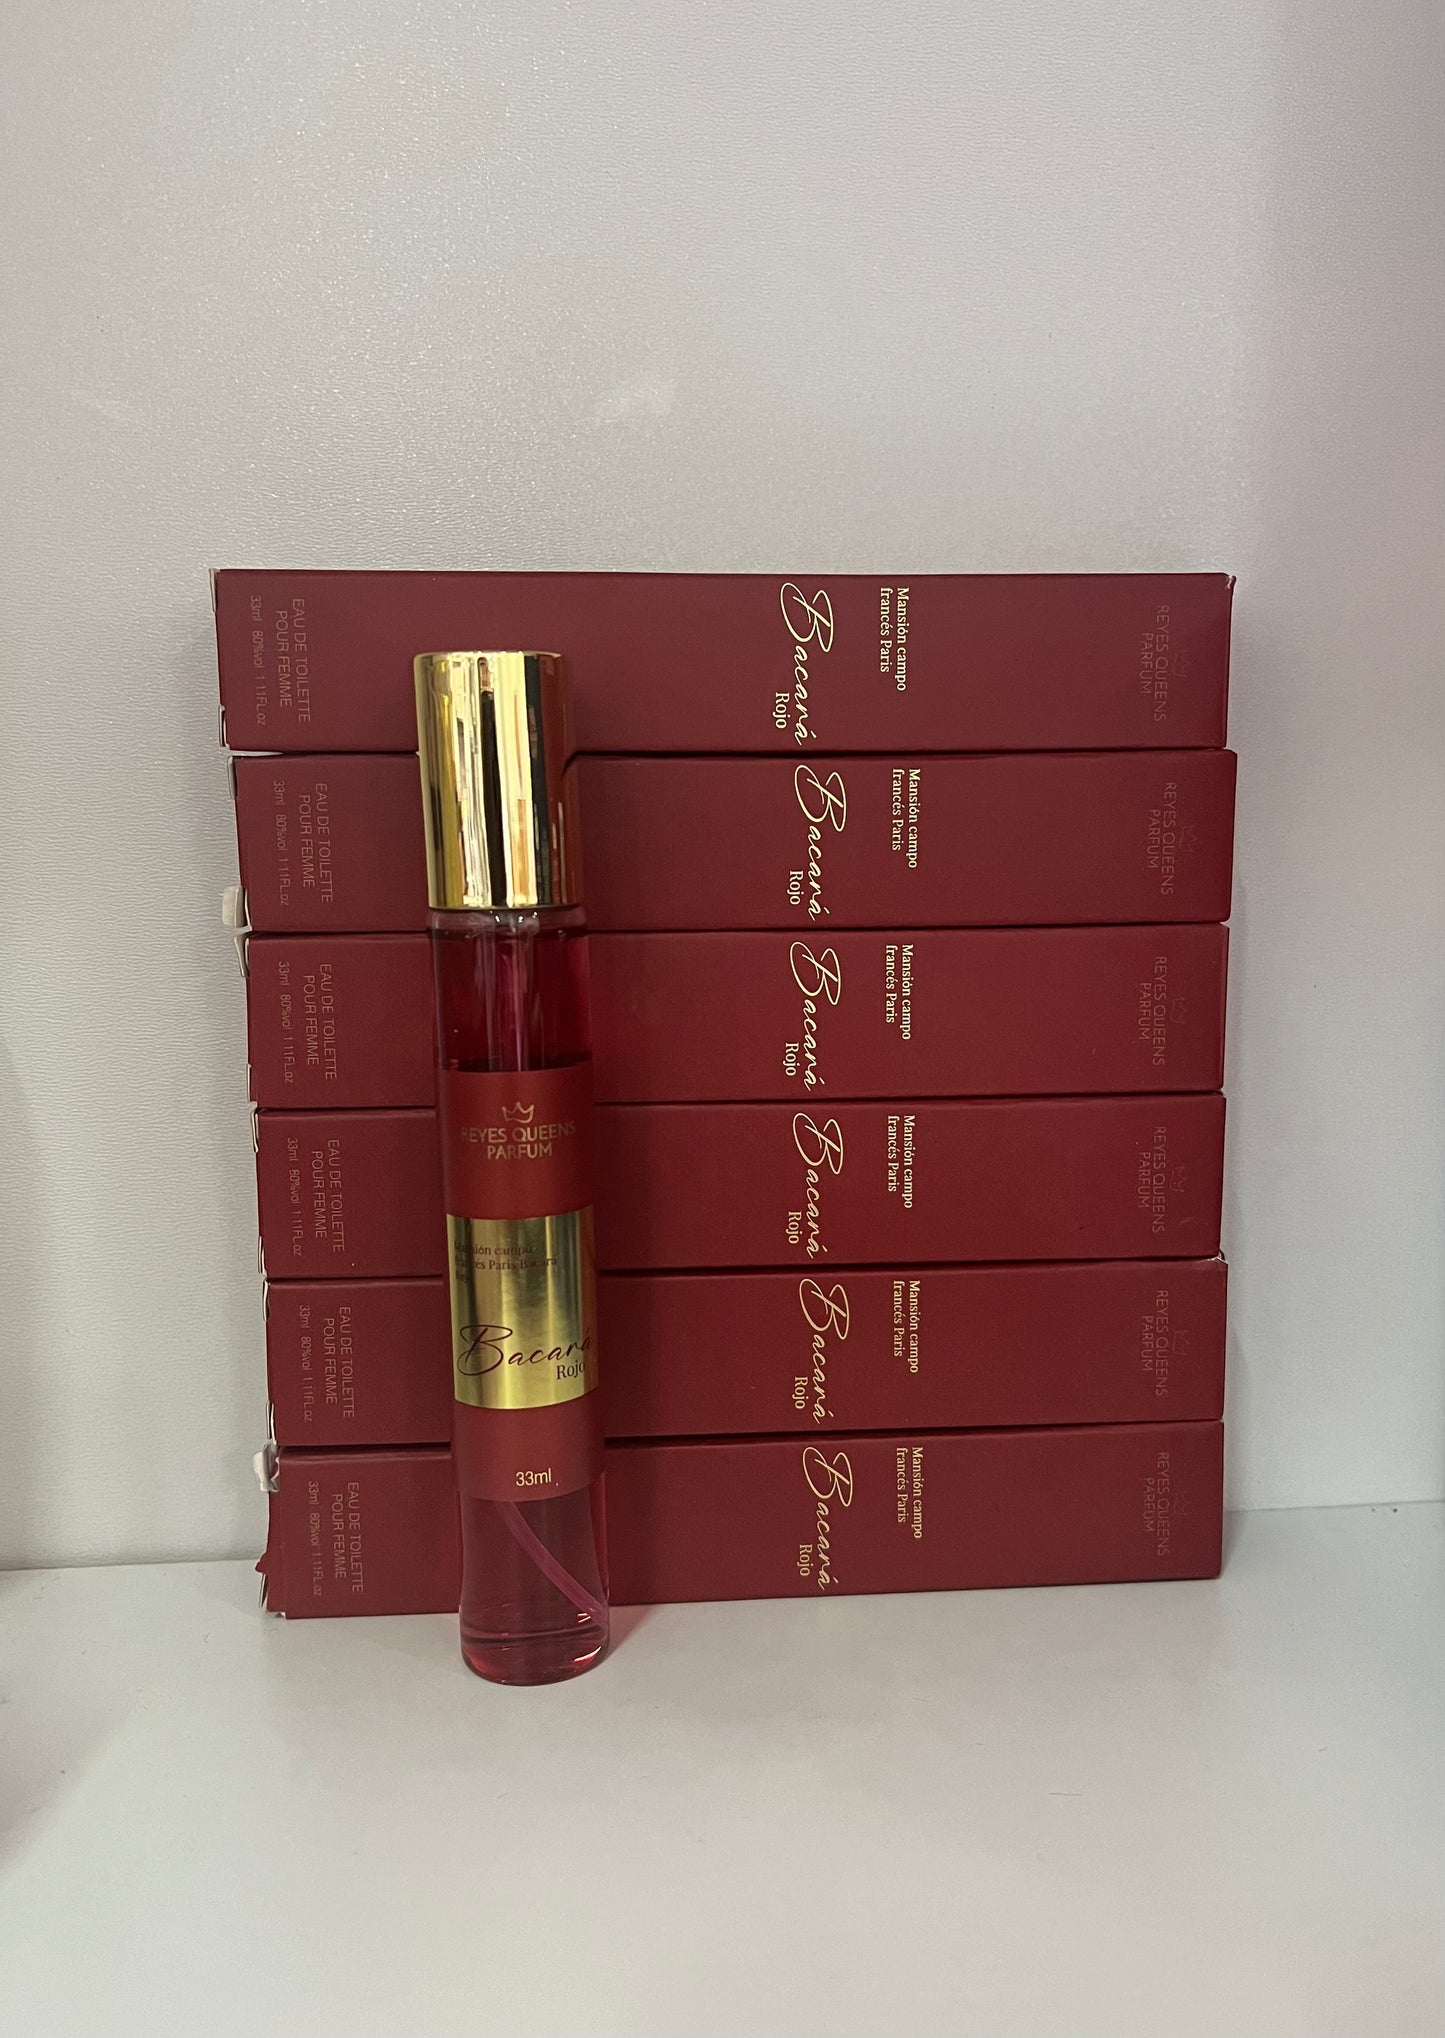 Mini talla perfume Bacará rojo inspiración a Bakkarat rouge